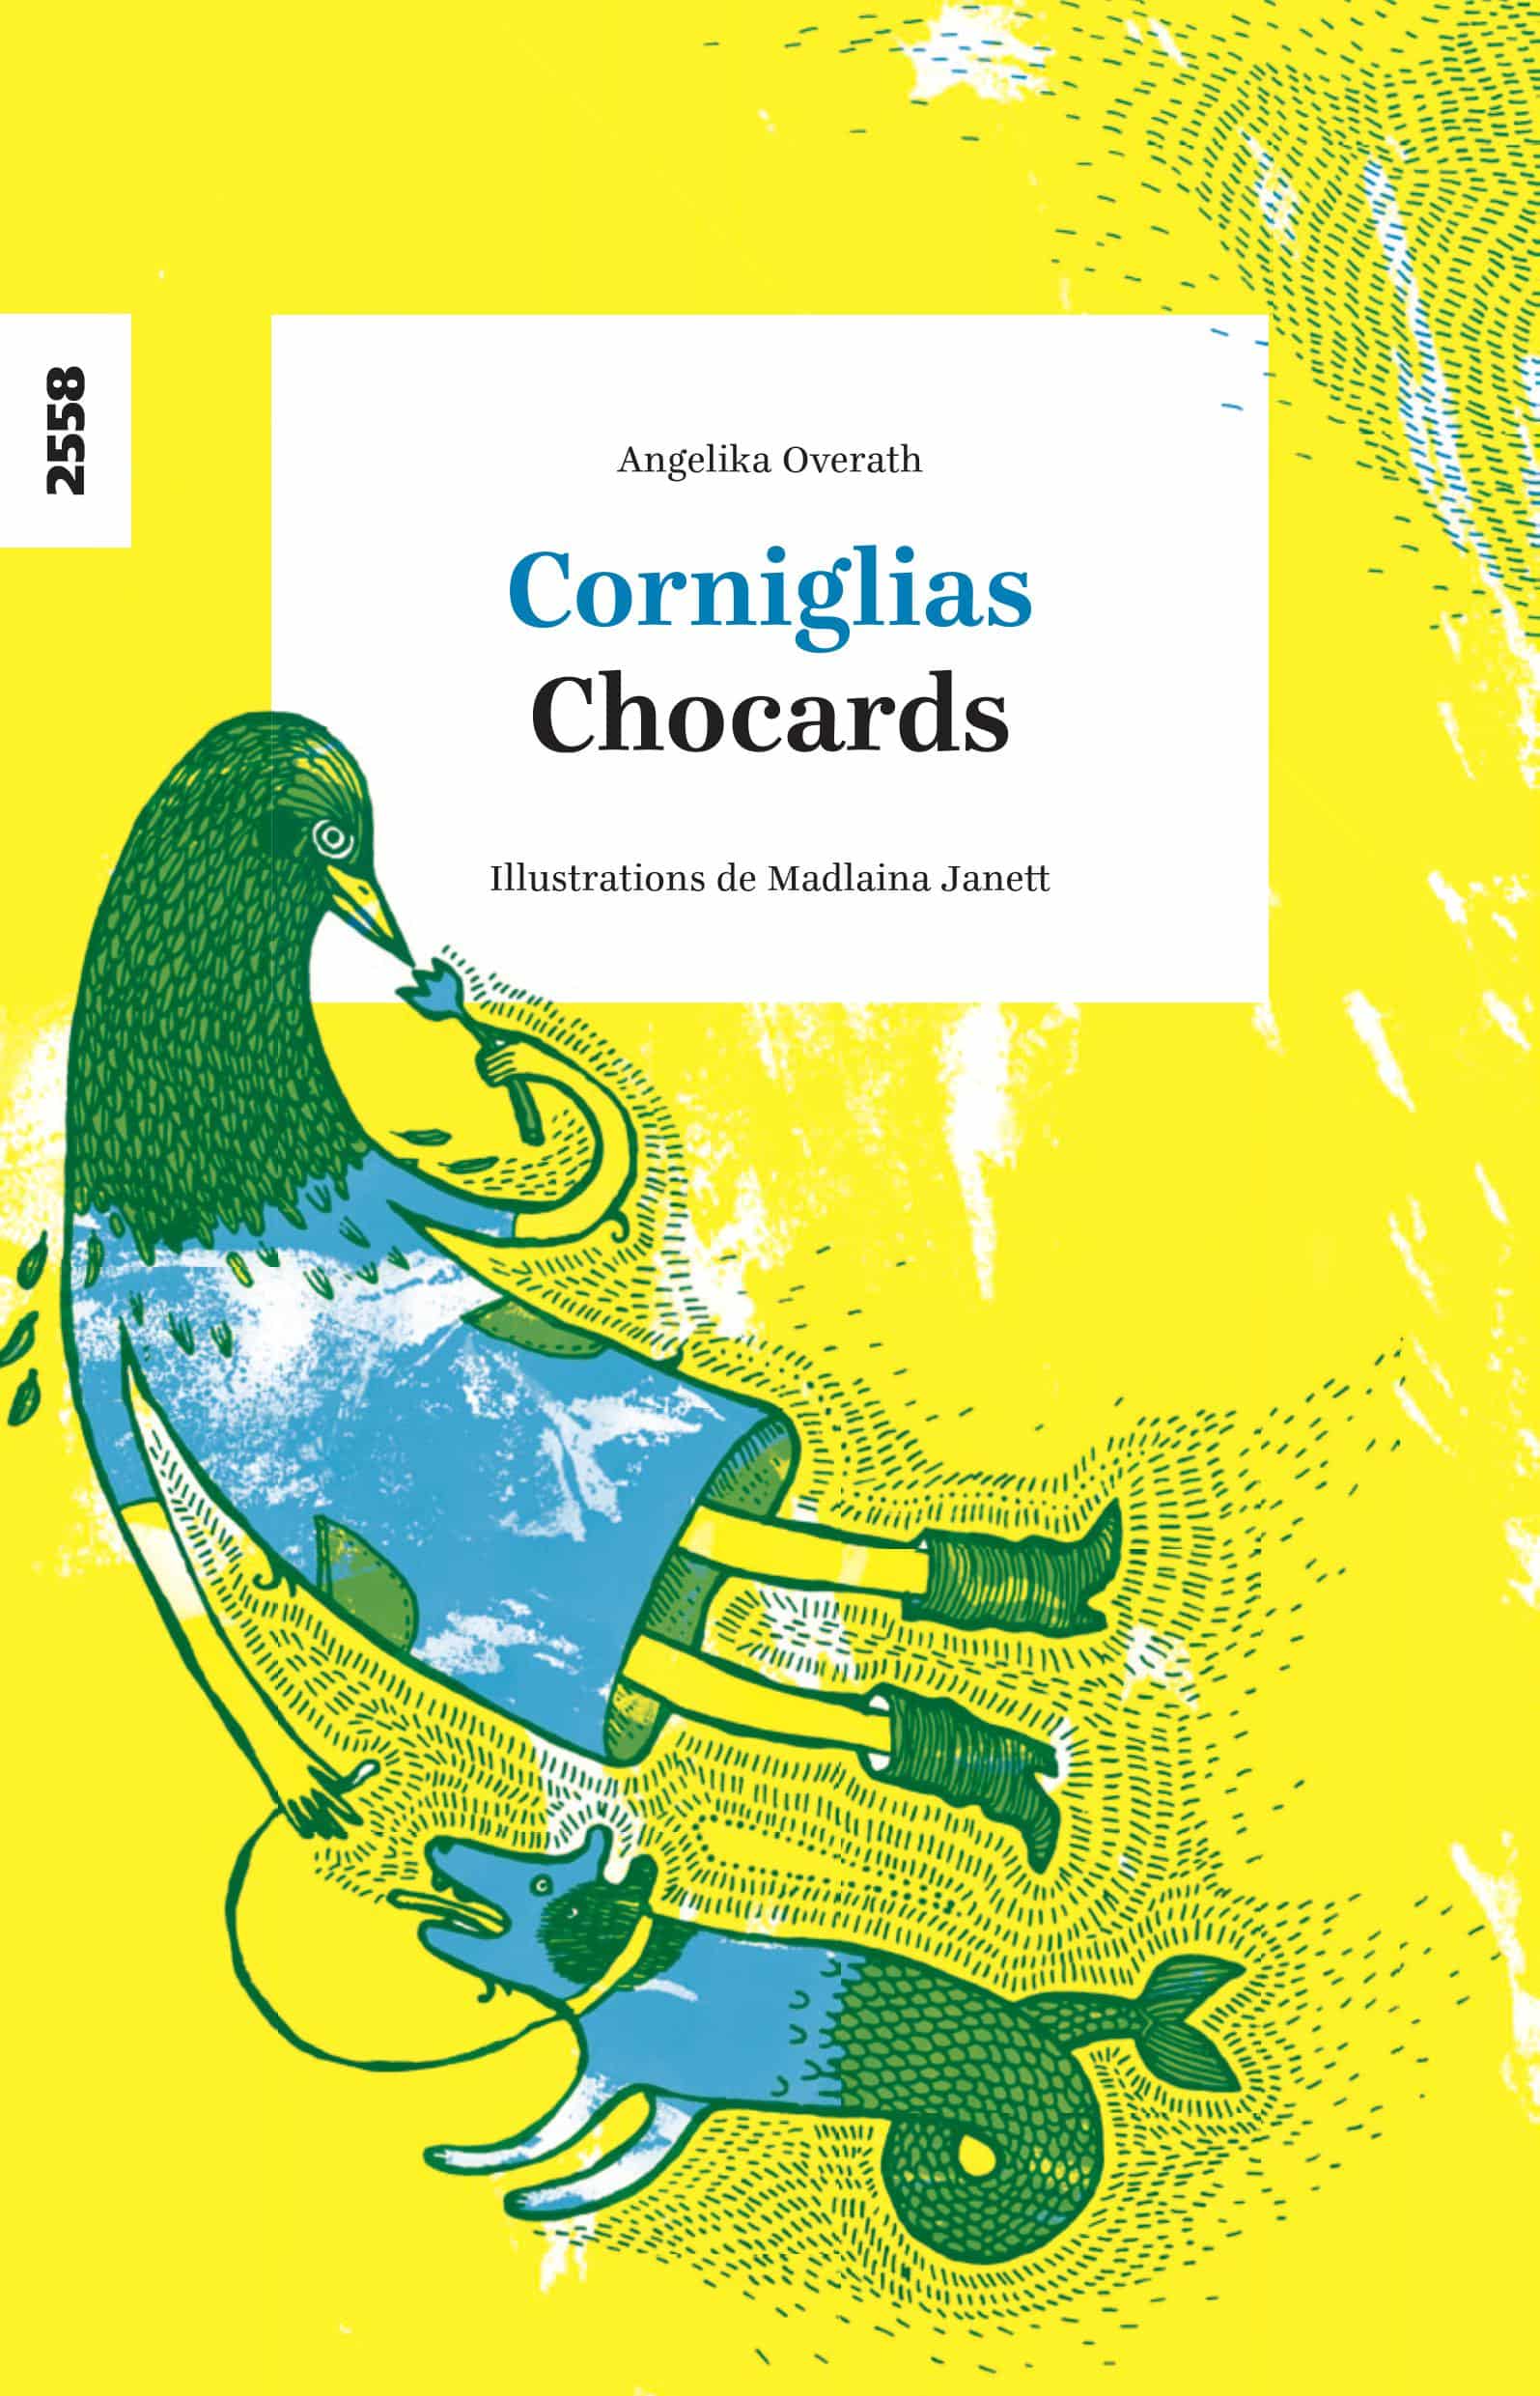 Corniglias / Chocards, zweisprachiger Gedichtband von Angelika Overath, illustriert von Madlaina Janett, Vallader, franz.